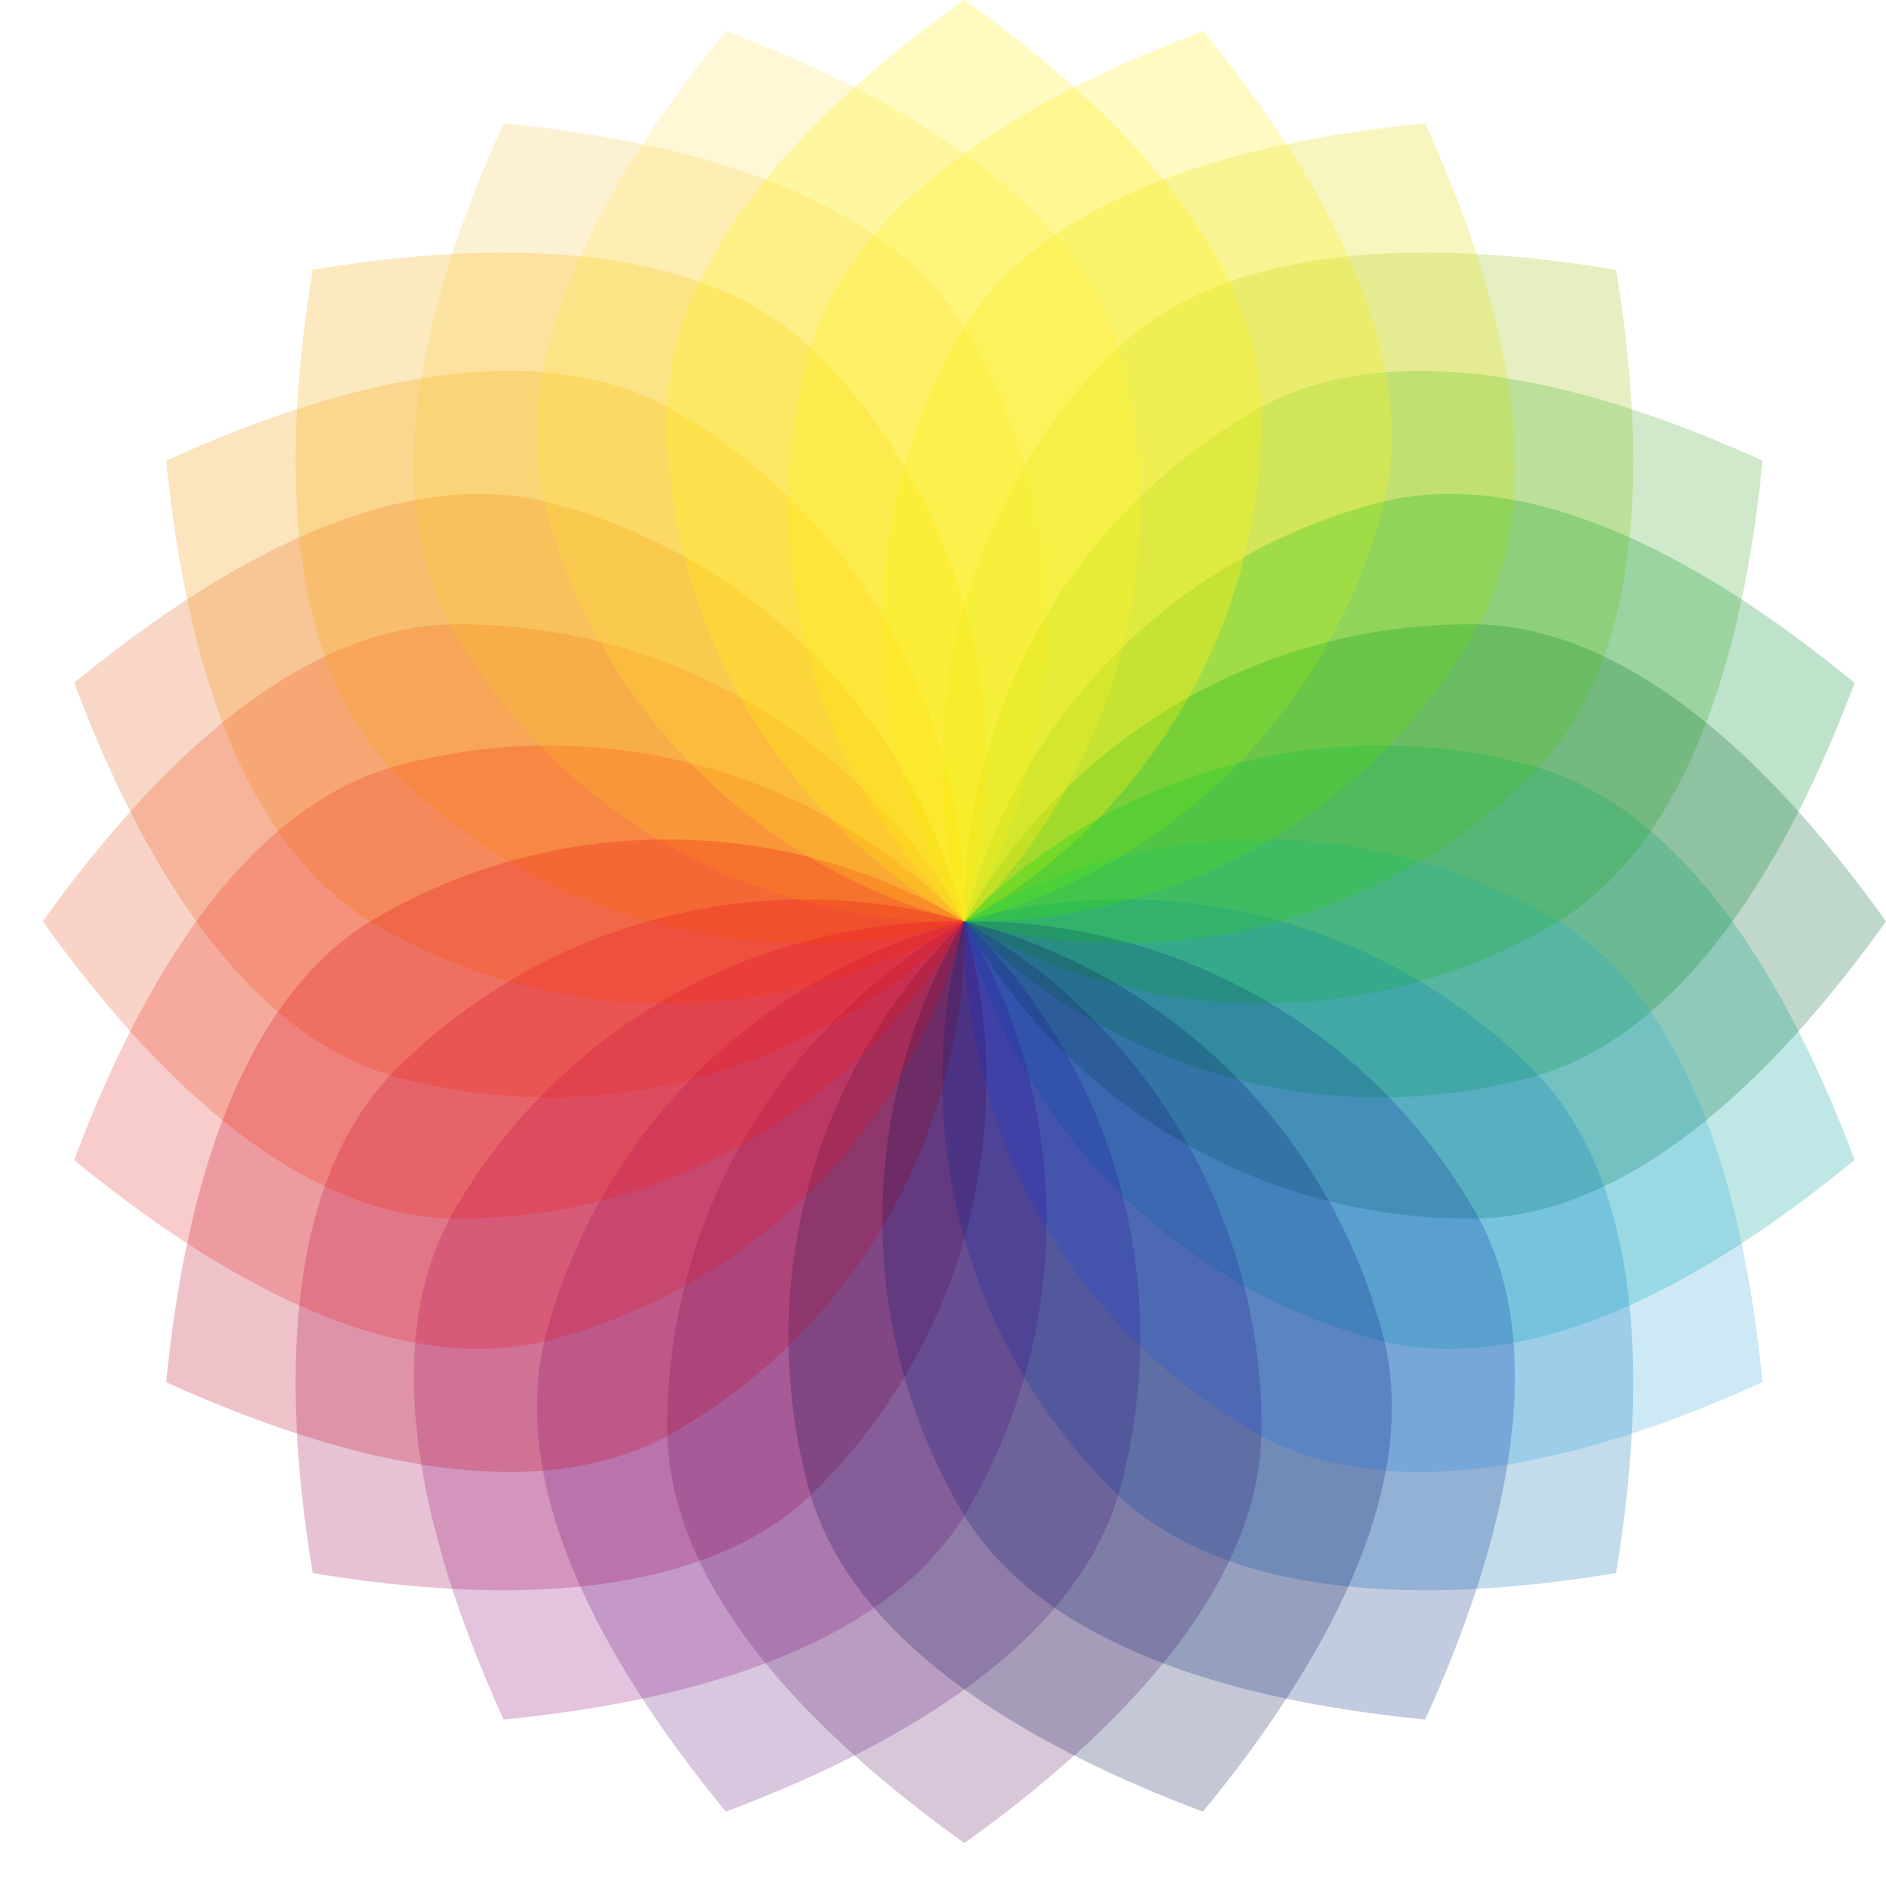 색 관리 (1)표색계(Color System)와 색도도(Chromaticity Diagram)